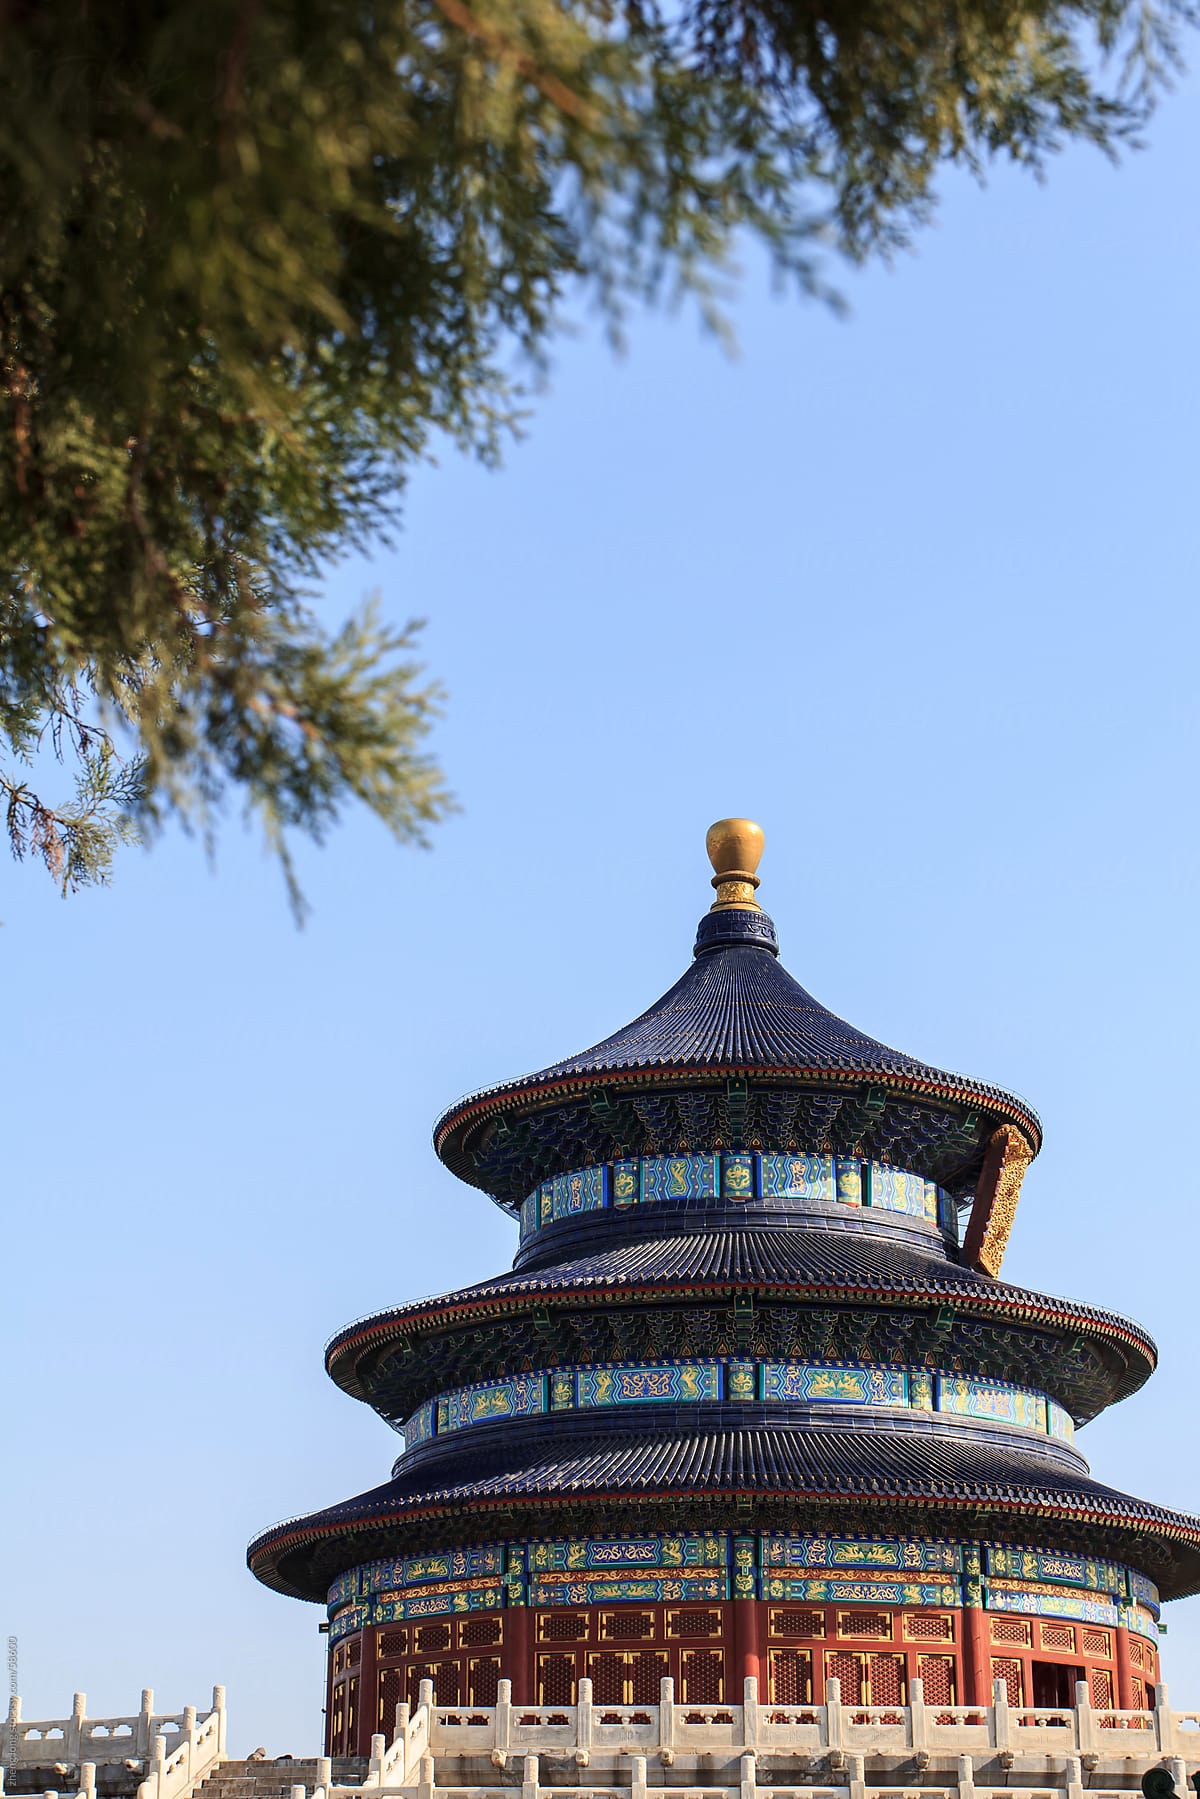 temple of heaven,Beijing